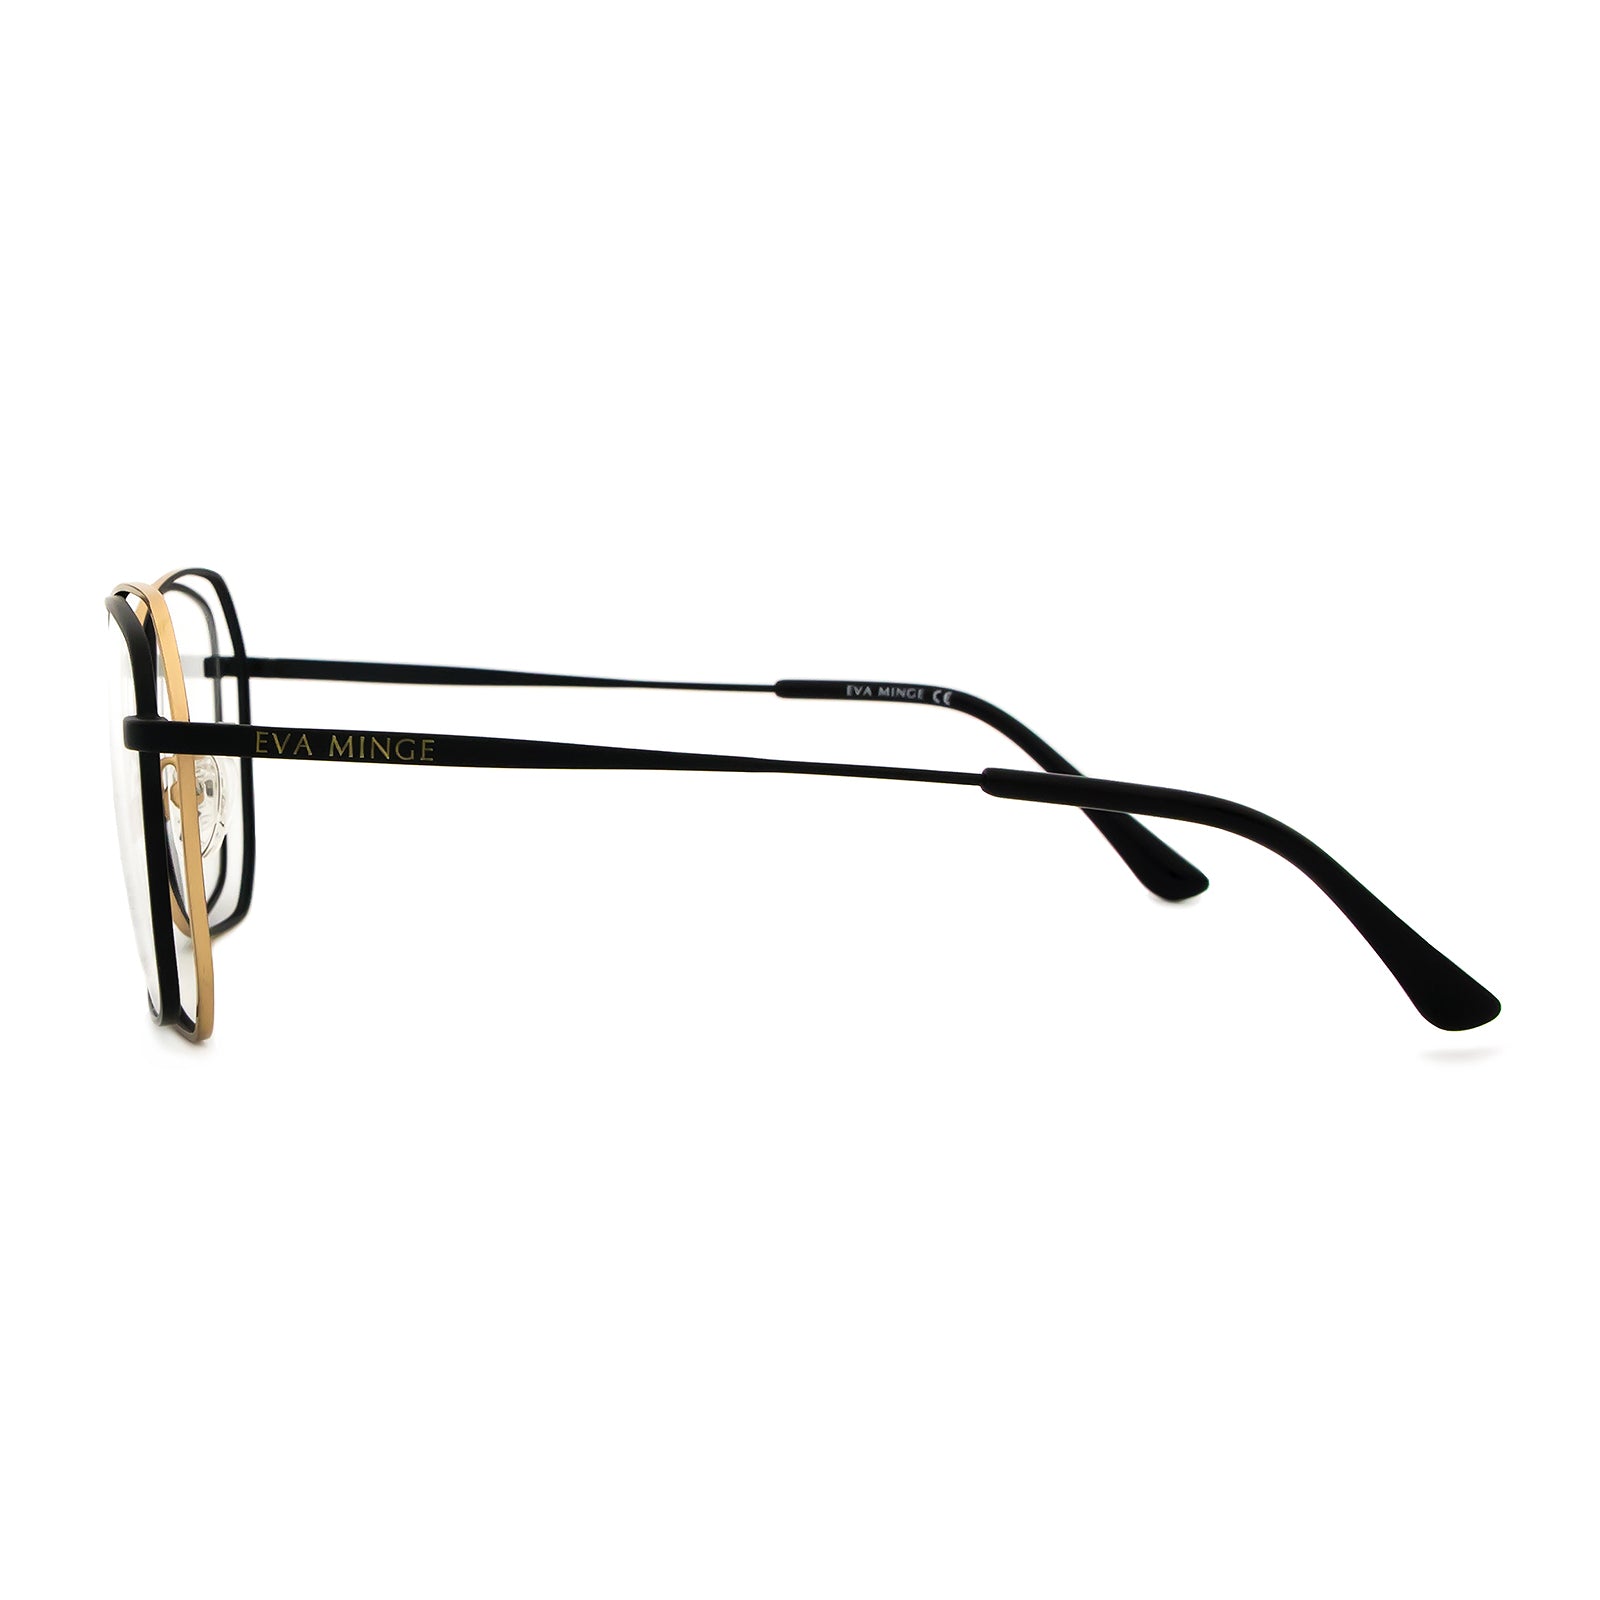 Okulary Eva Minge EMP 1014 C2 oprawki okularowe